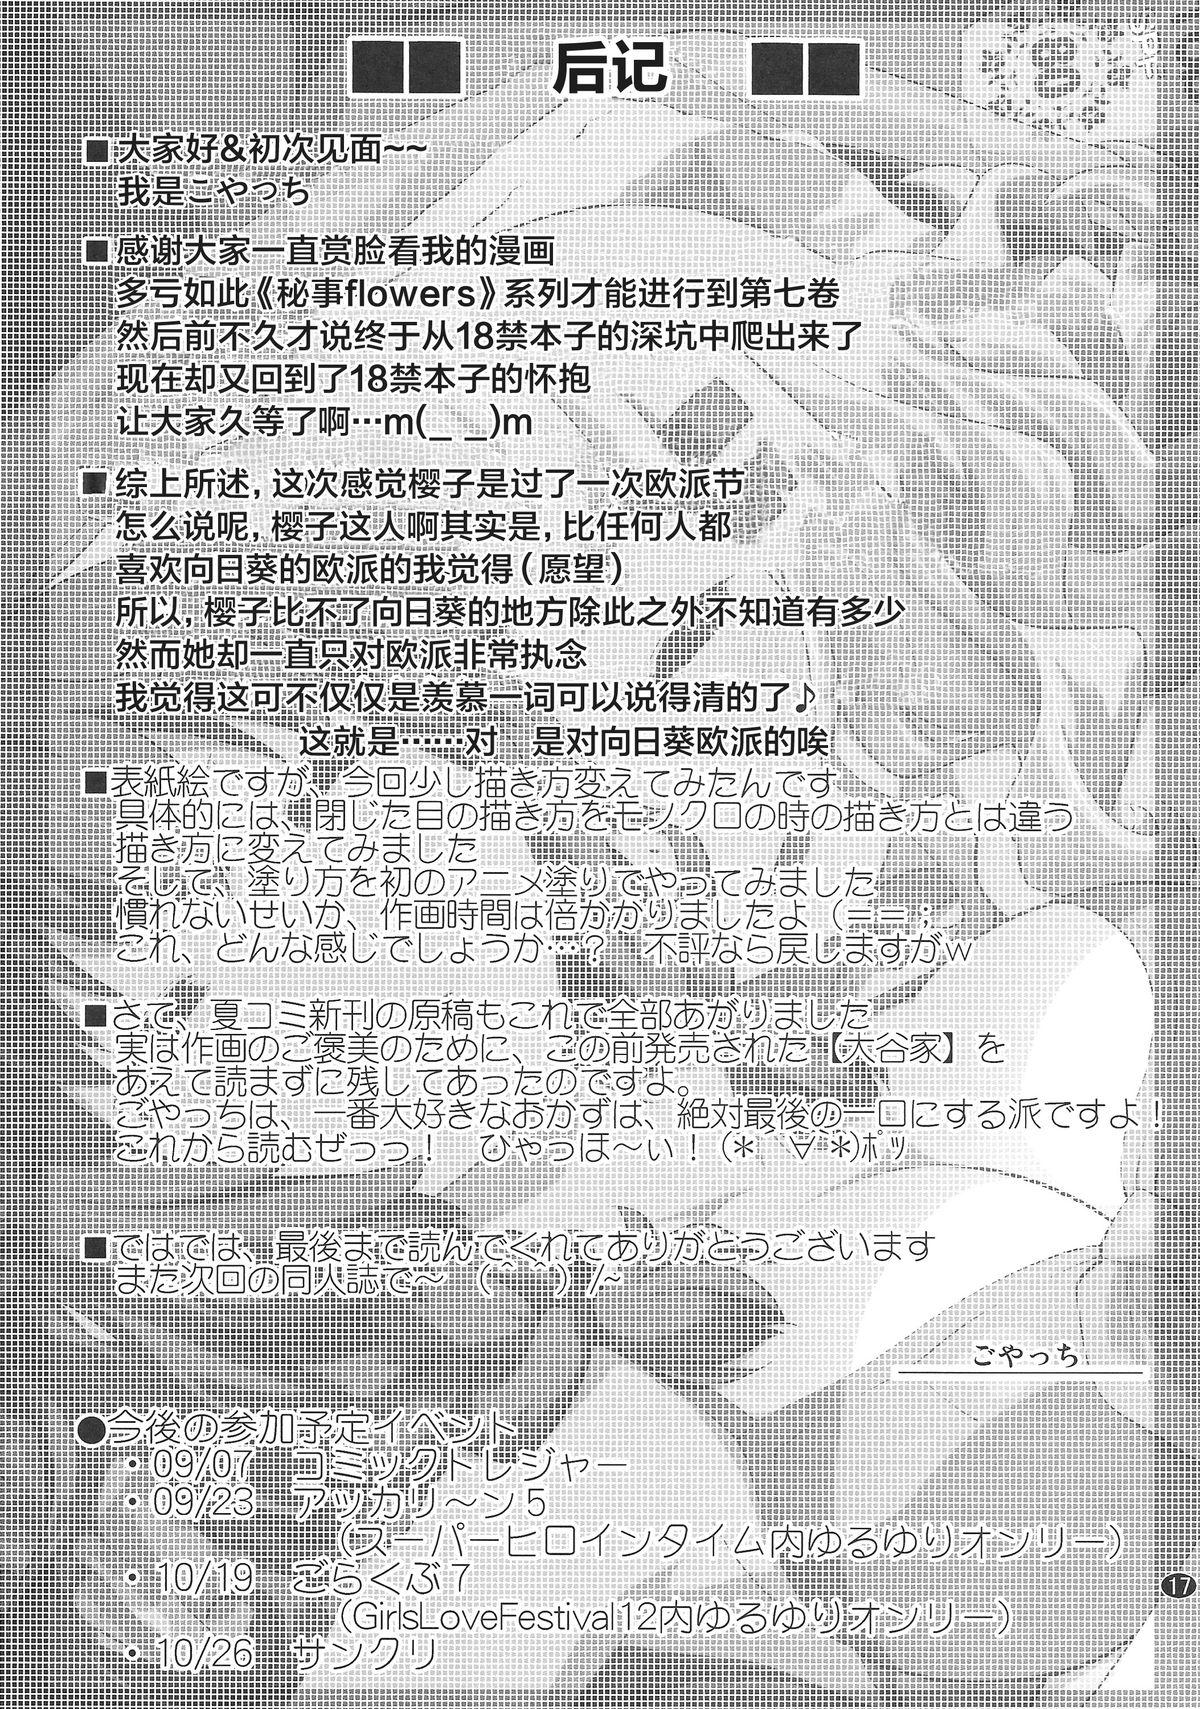 Himegoto Flowers 7 16